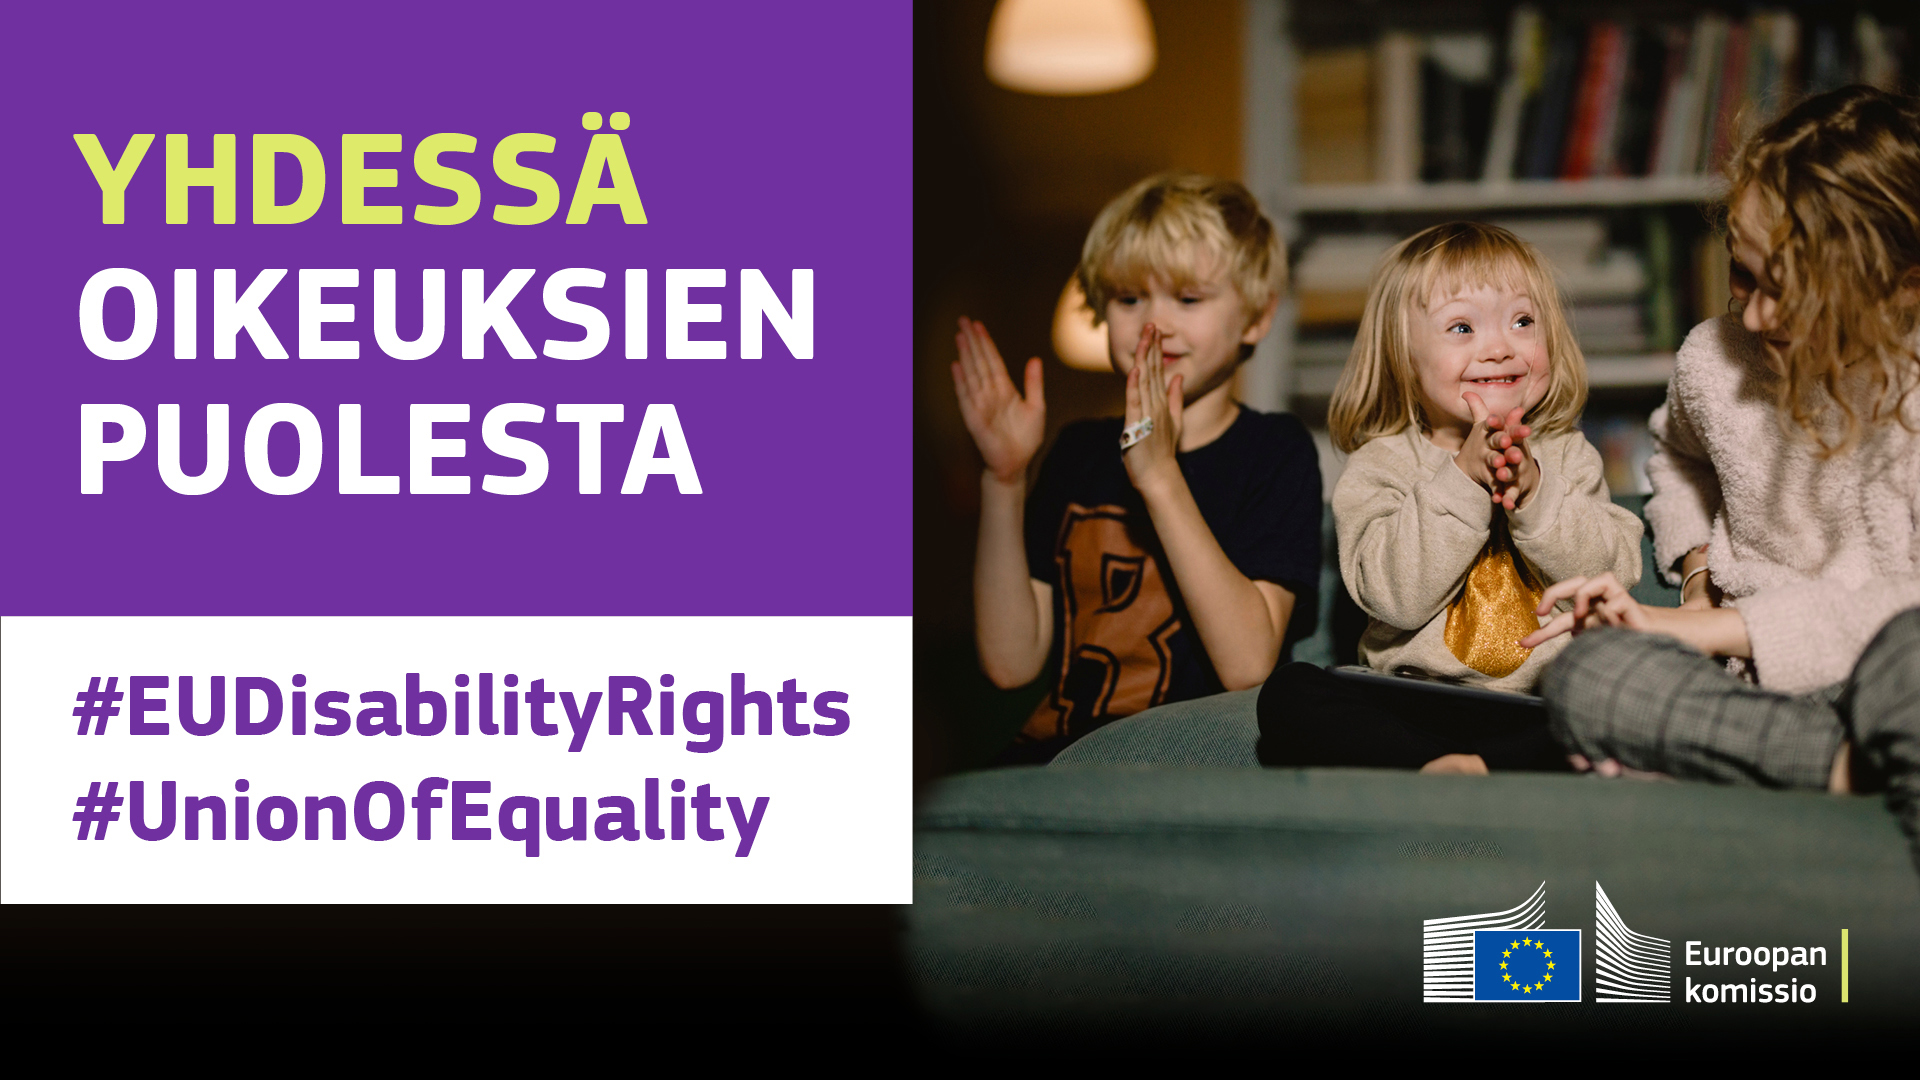 Kolme lasta leikkimässä yhdessä. Yhdellä heistä on Downin oireyhtymä. Tekstissä sanotaan: yhdessä oikeuksien puolesta, #EUDisabilityRights, #UnionOfEquality.